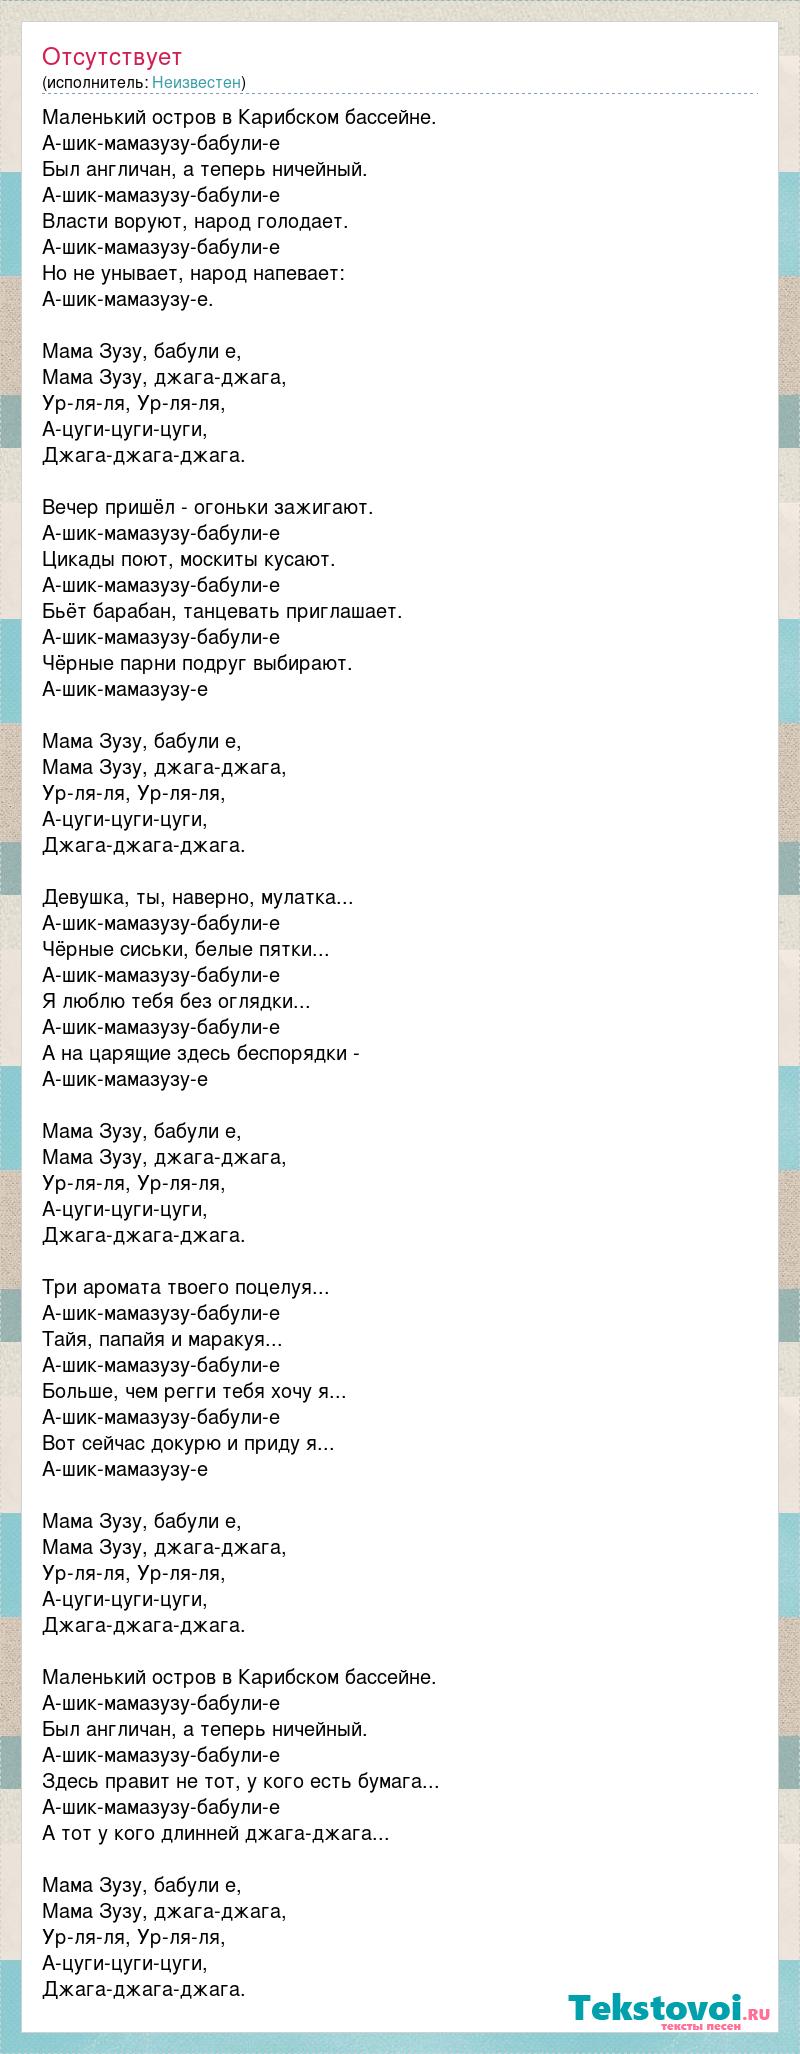 Ответы rebcentr-alyans.ru: кто поет песню?там такие слова:девушка ты наверно мулатка черные сиськи белые пятки